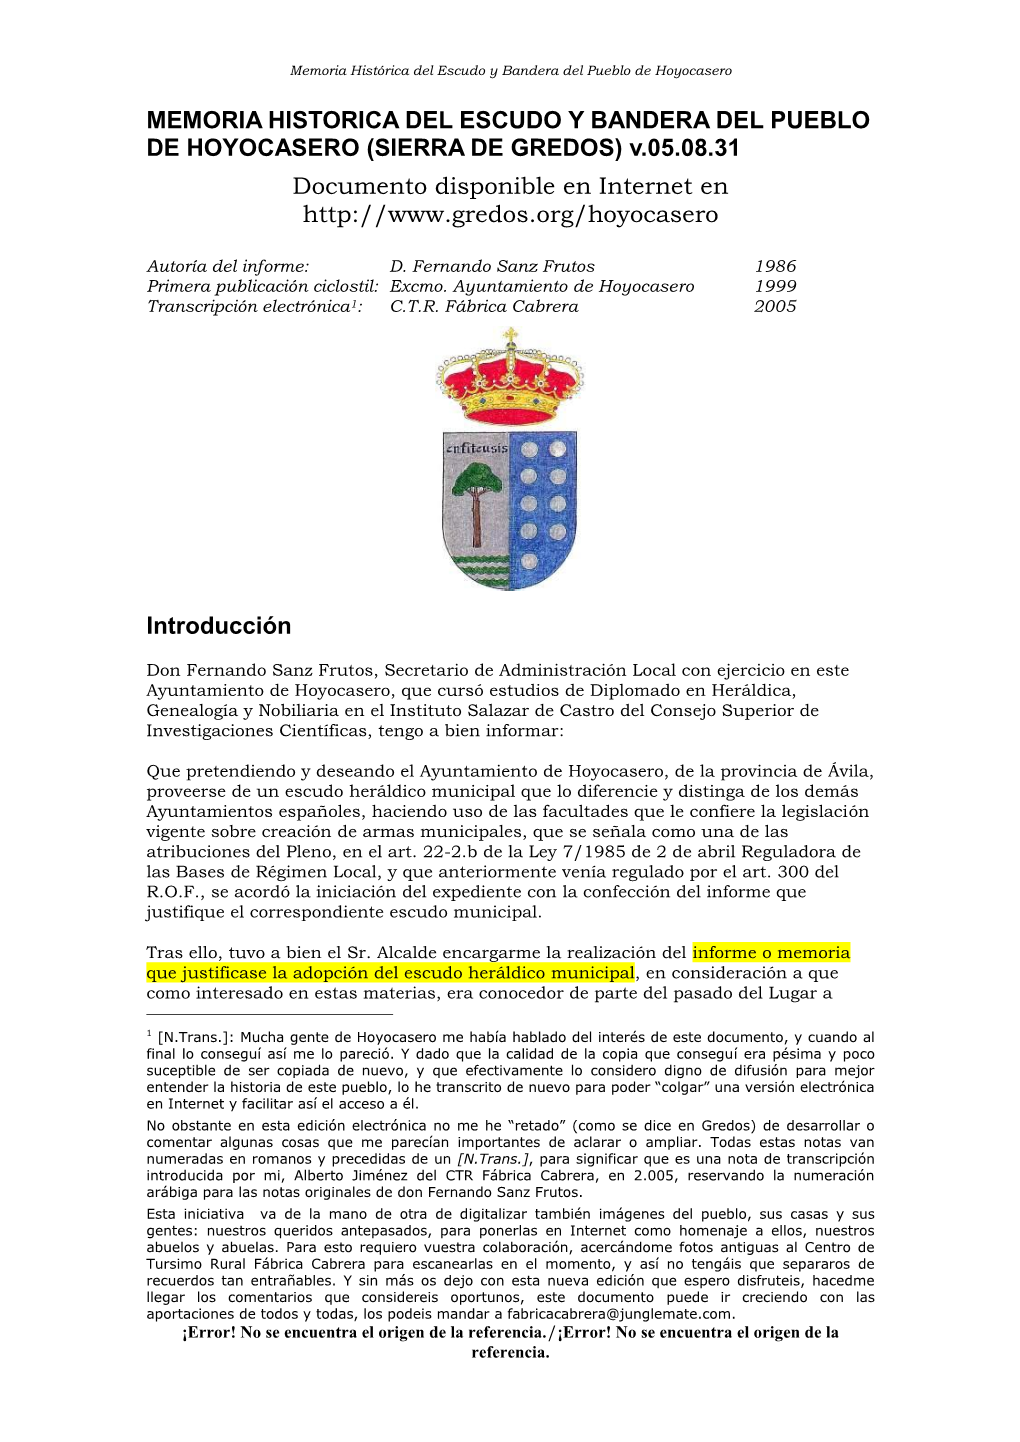 MEMORIA HISTORICA DEL ESCUDO Y BANDERA DEL PUEBLO DE HOYOCASERO (SIERRA DE GREDOS) V.05.08.31 Documento Disponible En Internet En